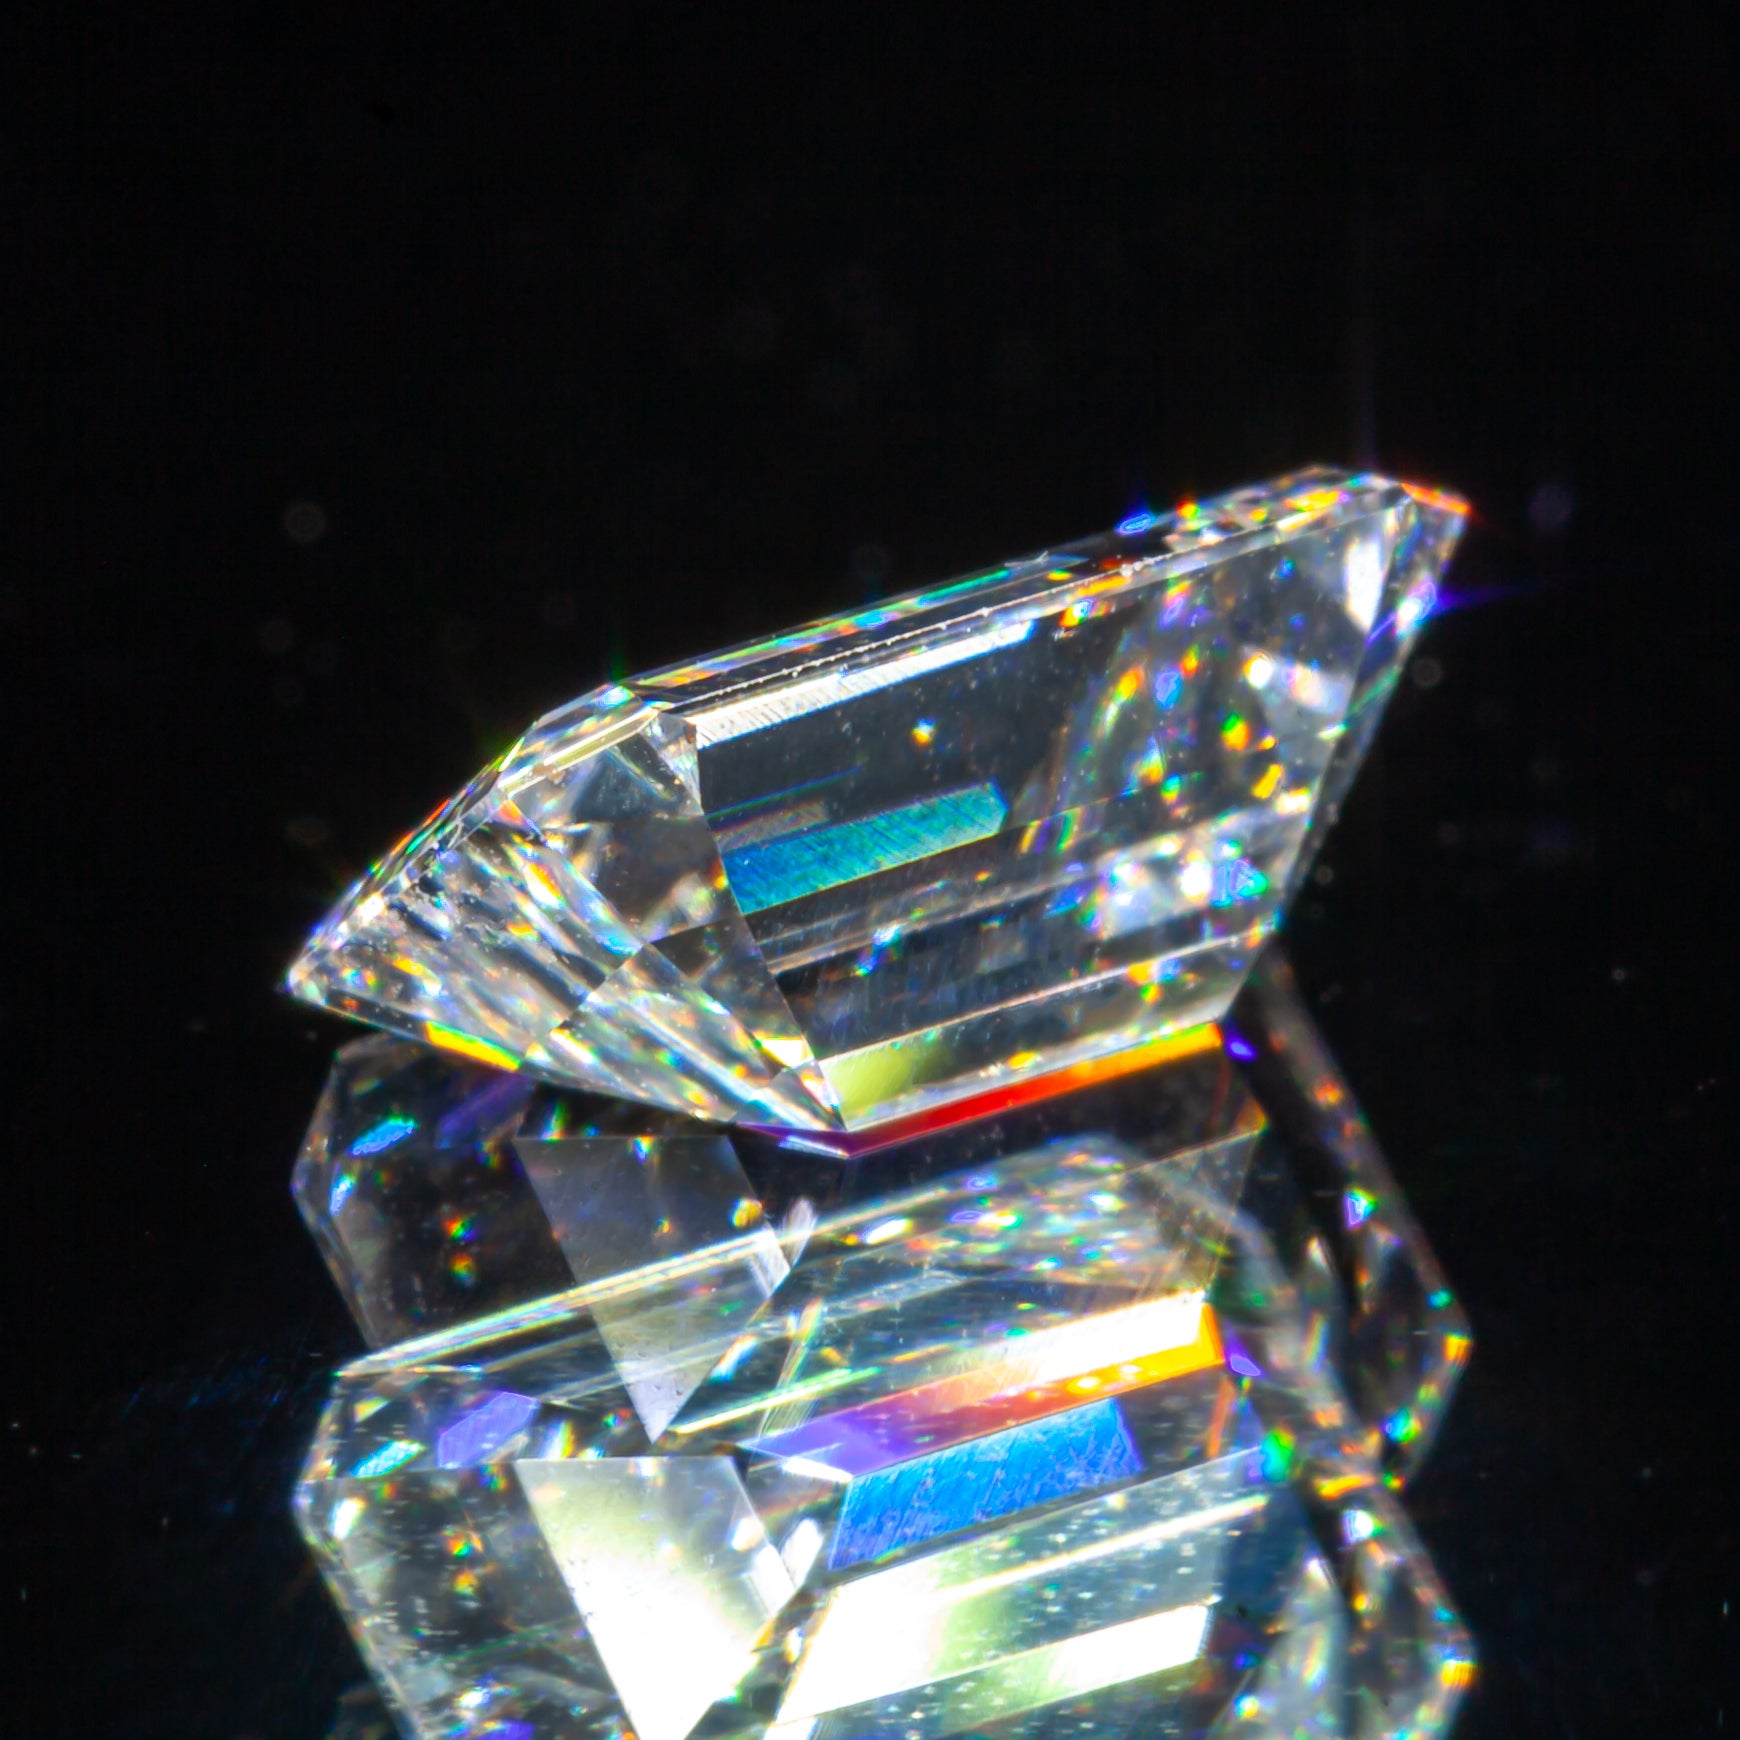 0,87 Karat Loser D / VS1 Smaragdschliff Diamant GIA zertifiziert

Diamant Allgemeine Informationen
Diamant-Schliff: Smaragd-Schliff
Abmessungen: 7.43  x  4.81  -  2.82

Ergebnisse der Diamantklassifizierung
Karat Gewicht: 0,87
Farbe Grad: